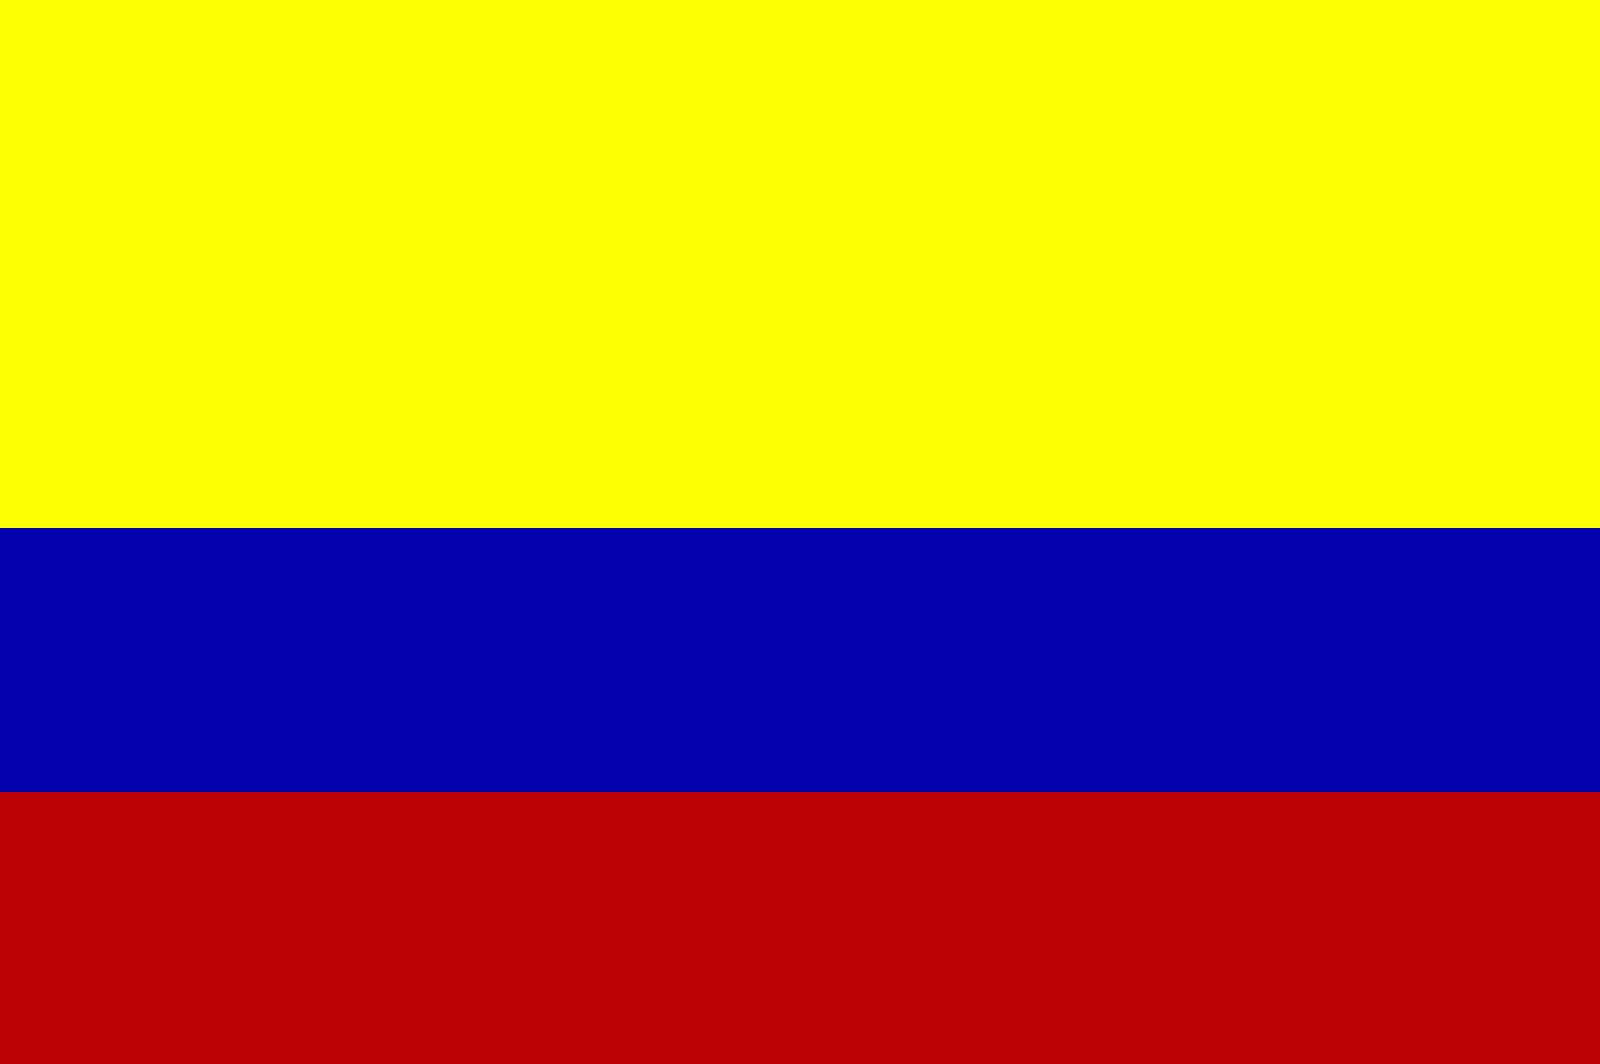 Denunciado Santos por encubrir a Maduro colombiano